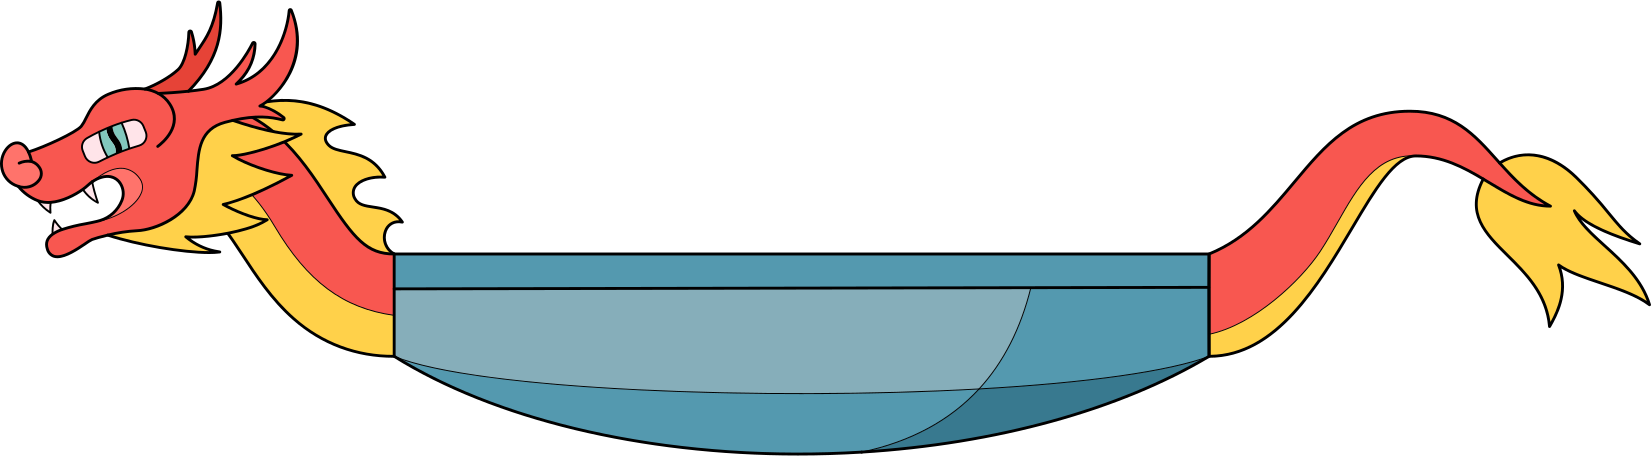 dragon boat Illustration in PNG, SVG